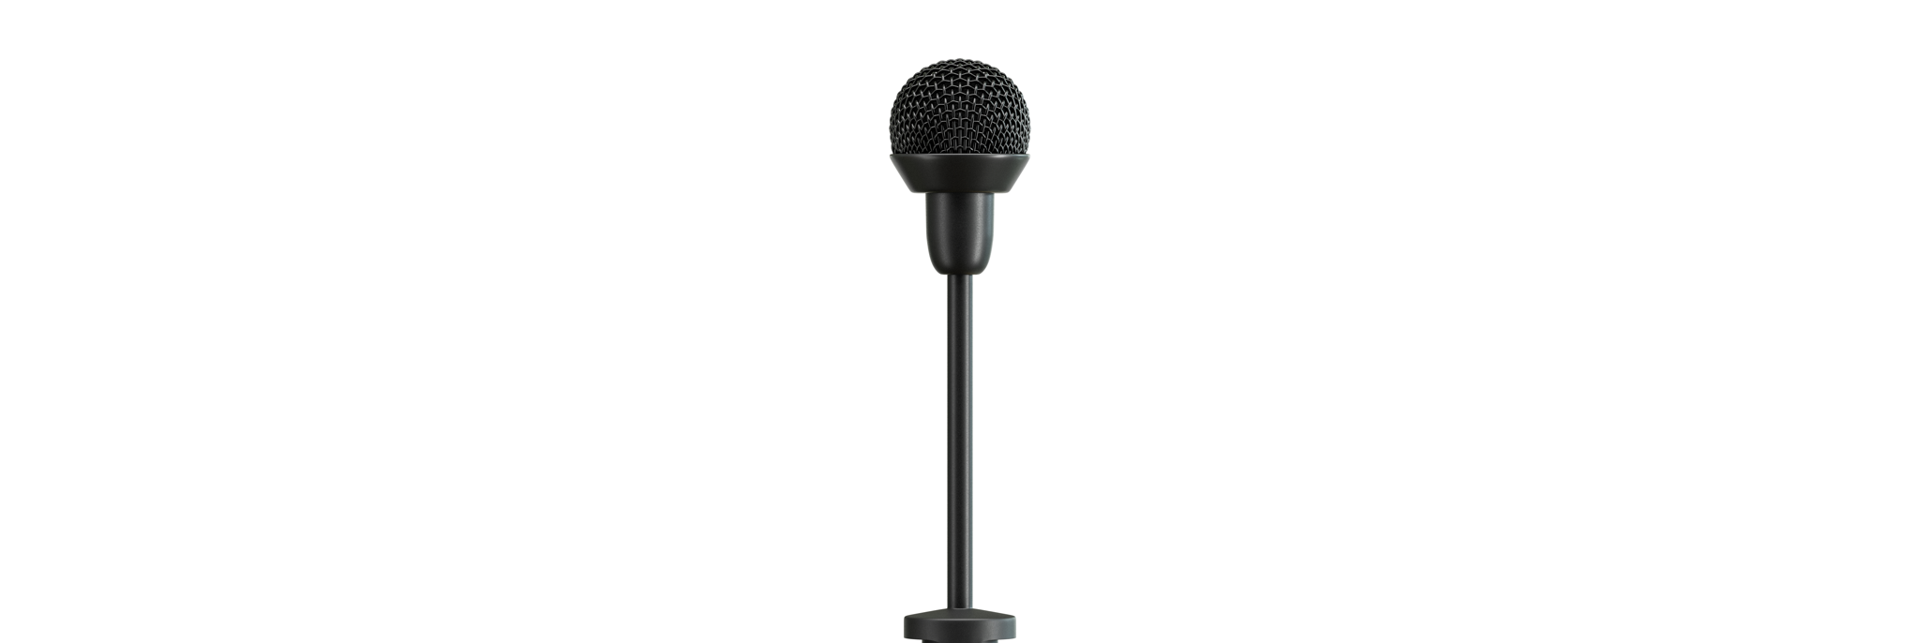 Sennheiser présente un nouveau microphone pour les présentateurs